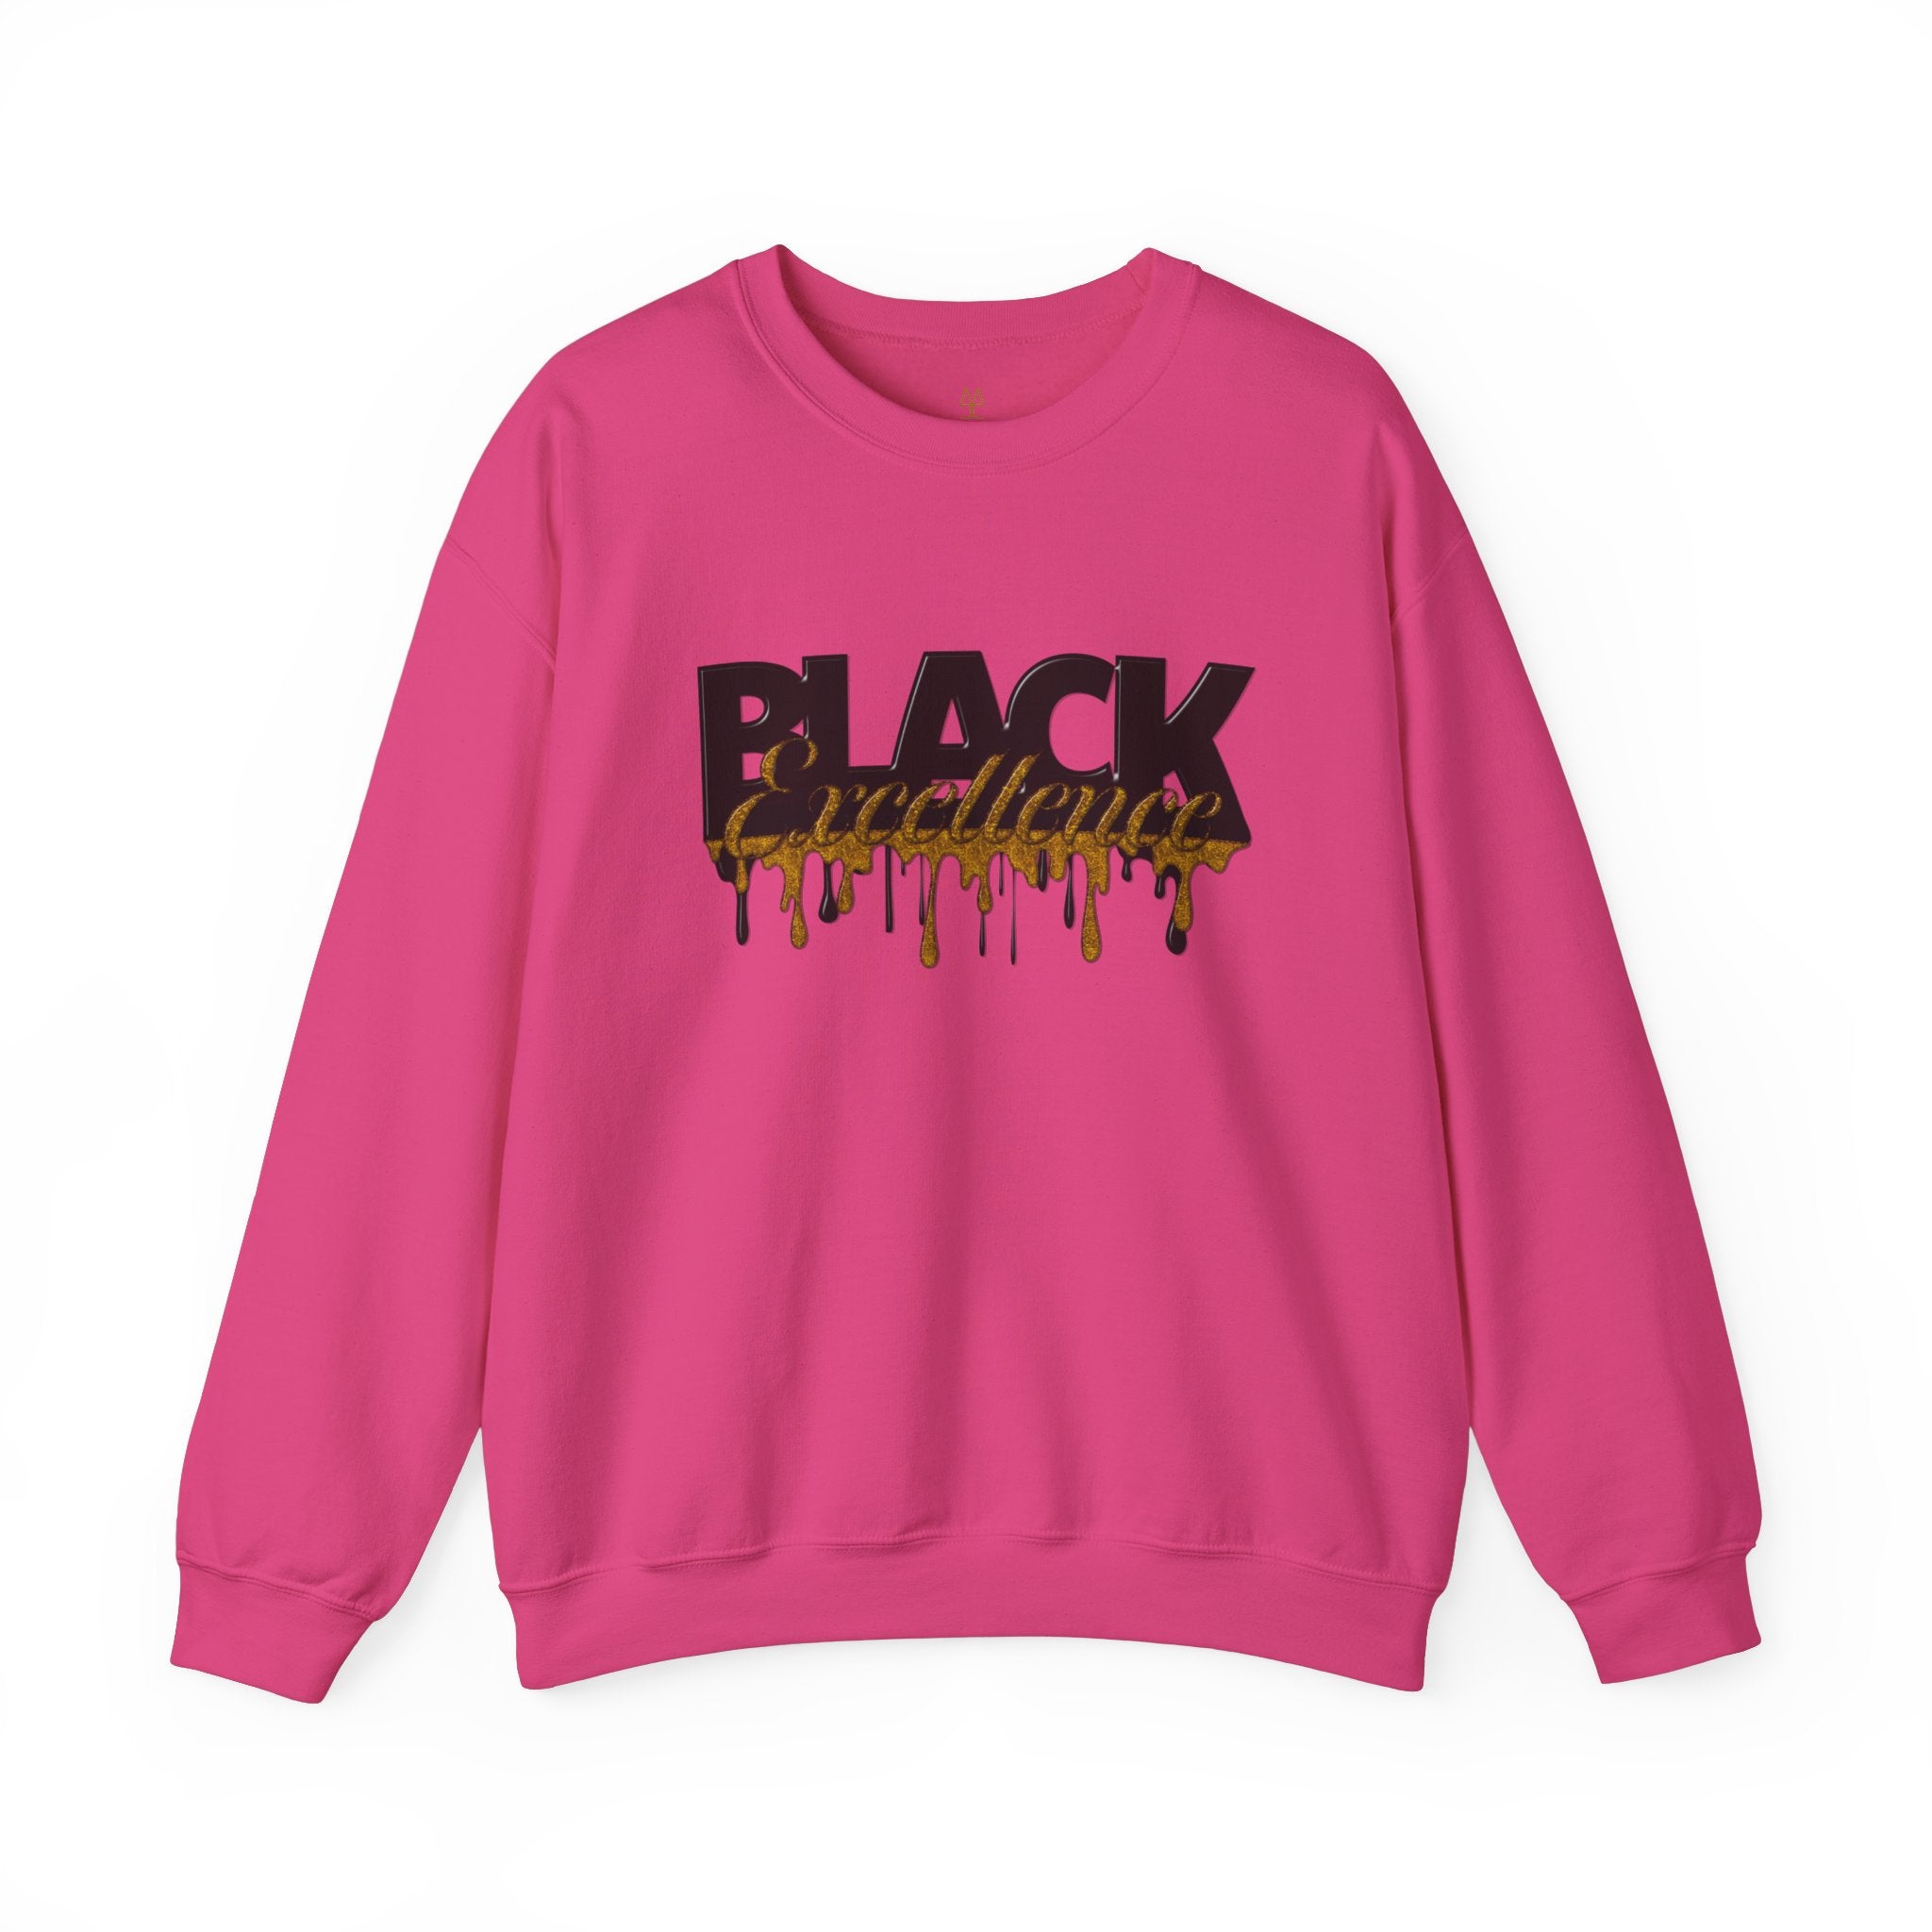 Black Excellence long sleeve sweatshirt in pink.